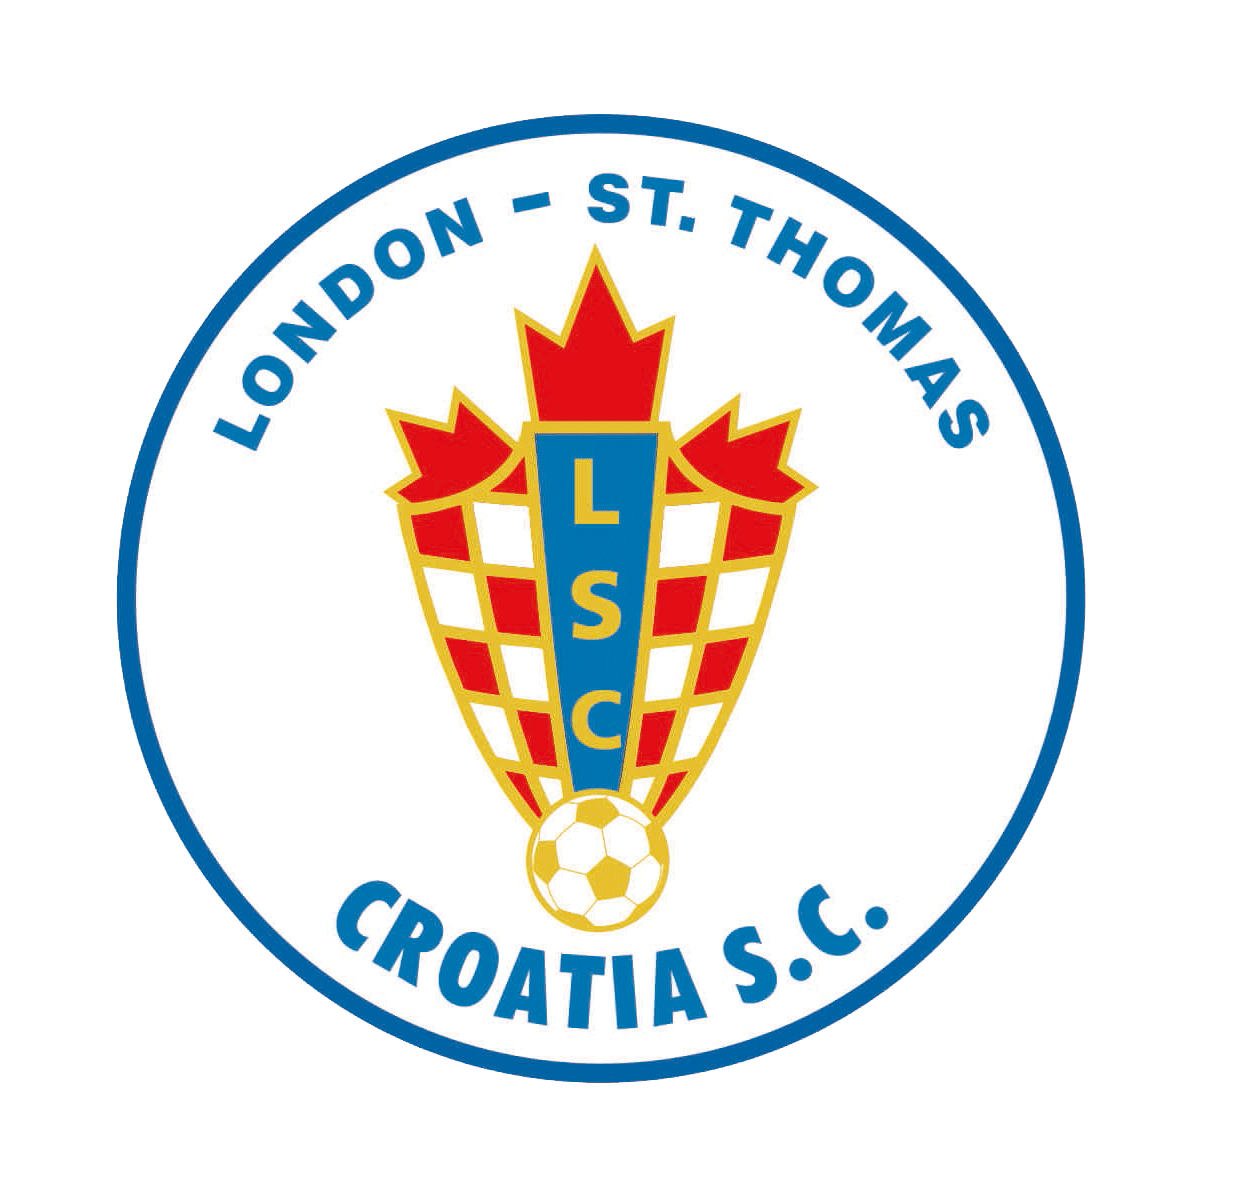 LS Croatia Soccer Club